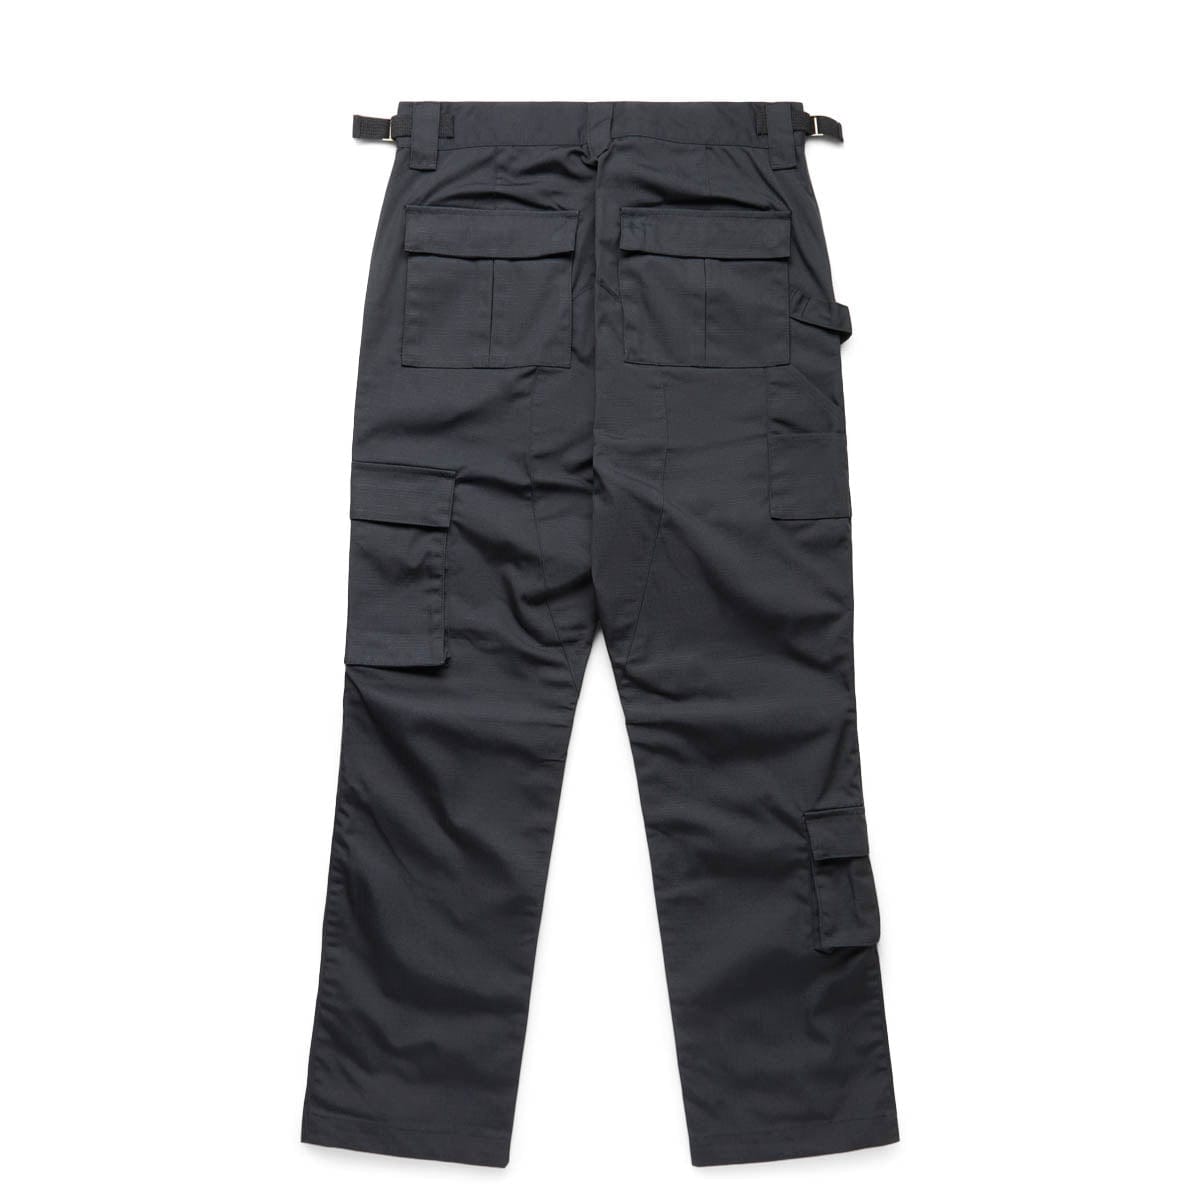 Wrangler Men's Relaxed Fit Flex Cargo Pants - Black 30x30